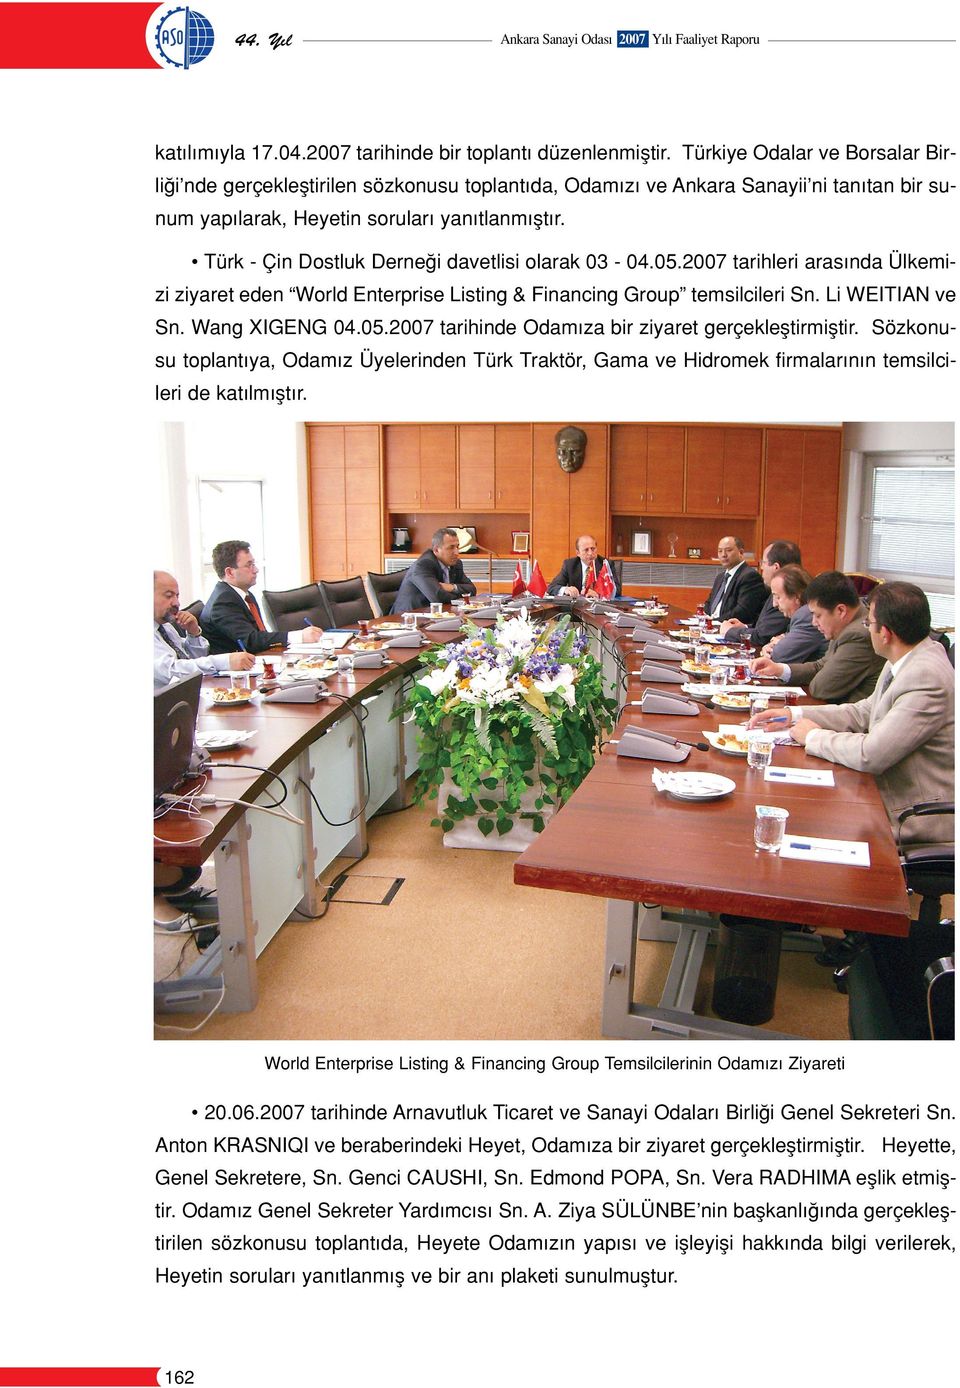 Türk - Çin Dostluk Derne i davetlisi olarak 03-04.05.2007 tarihleri aras nda Ülkemizi ziyaret eden World Enterprise Listing & Financing Group temsilcileri Sn. Li WEITIAN ve Sn. Wang XIGENG 04.05.2007 tarihinde Odam za bir ziyaret gerçekleﬂtirmiﬂtir.